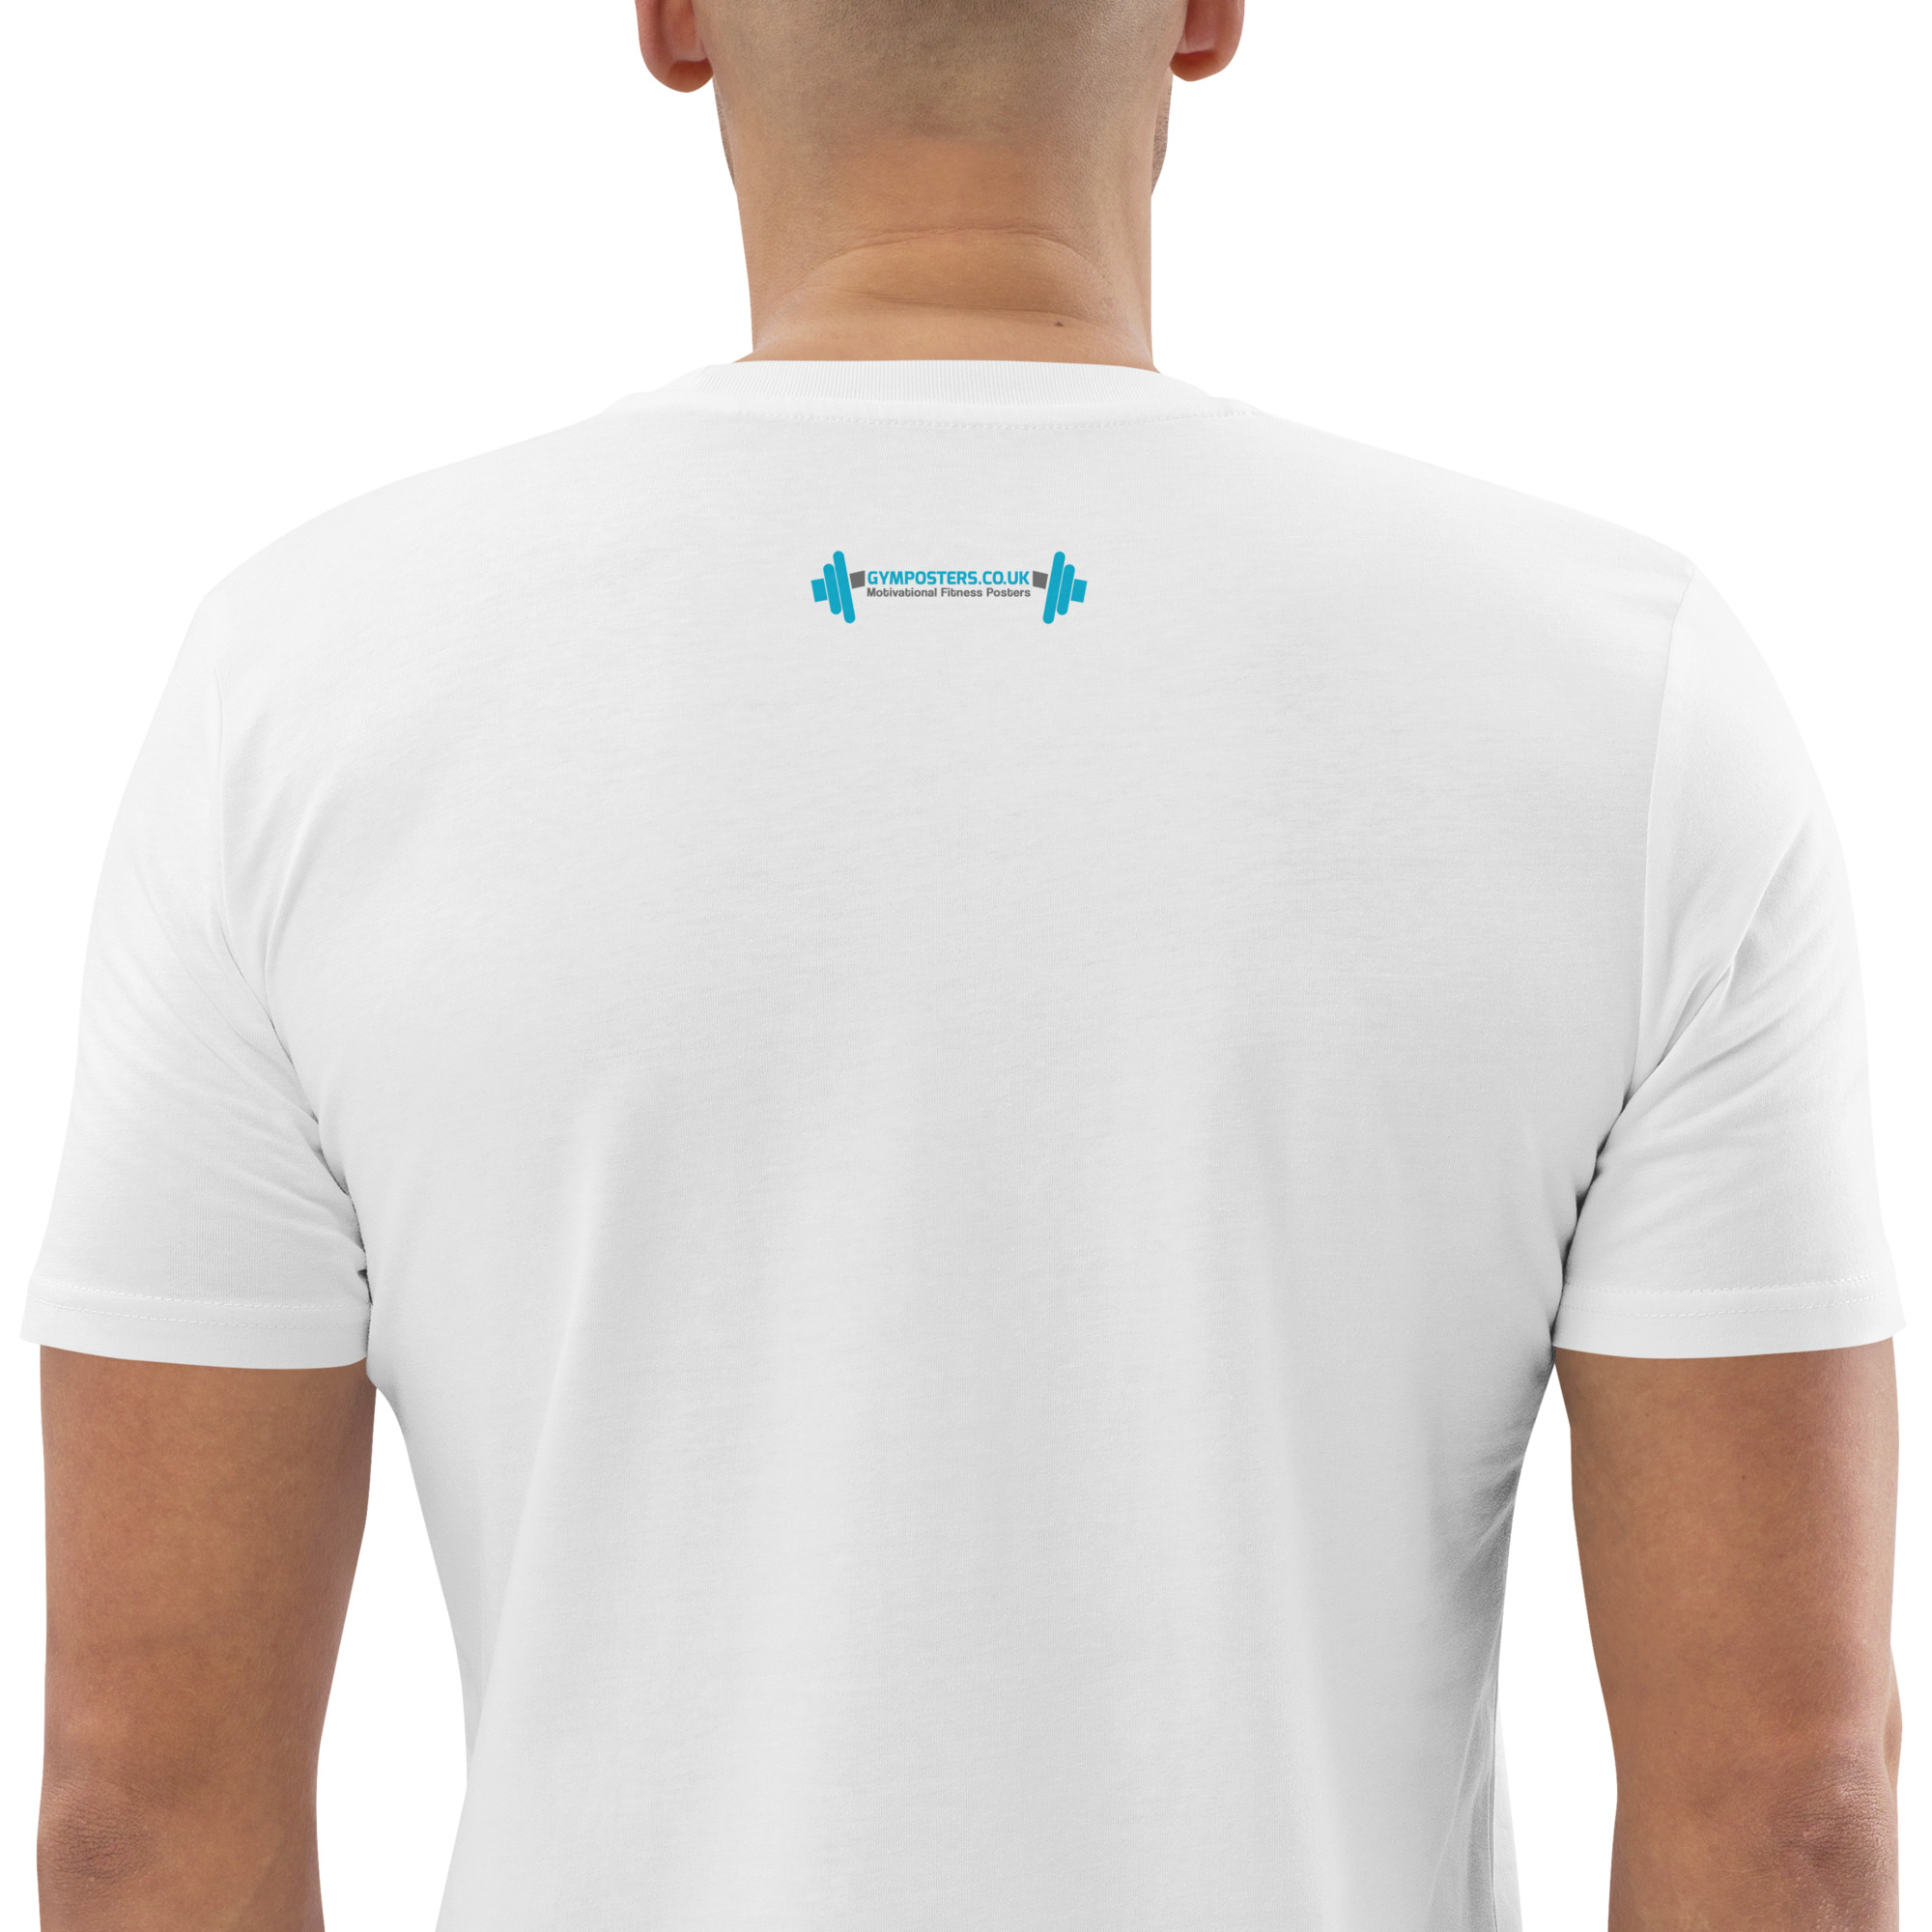 unisex-organic-cotton-t-shirt-white-zoomed-in-2-65784e0bb55e9.jpg